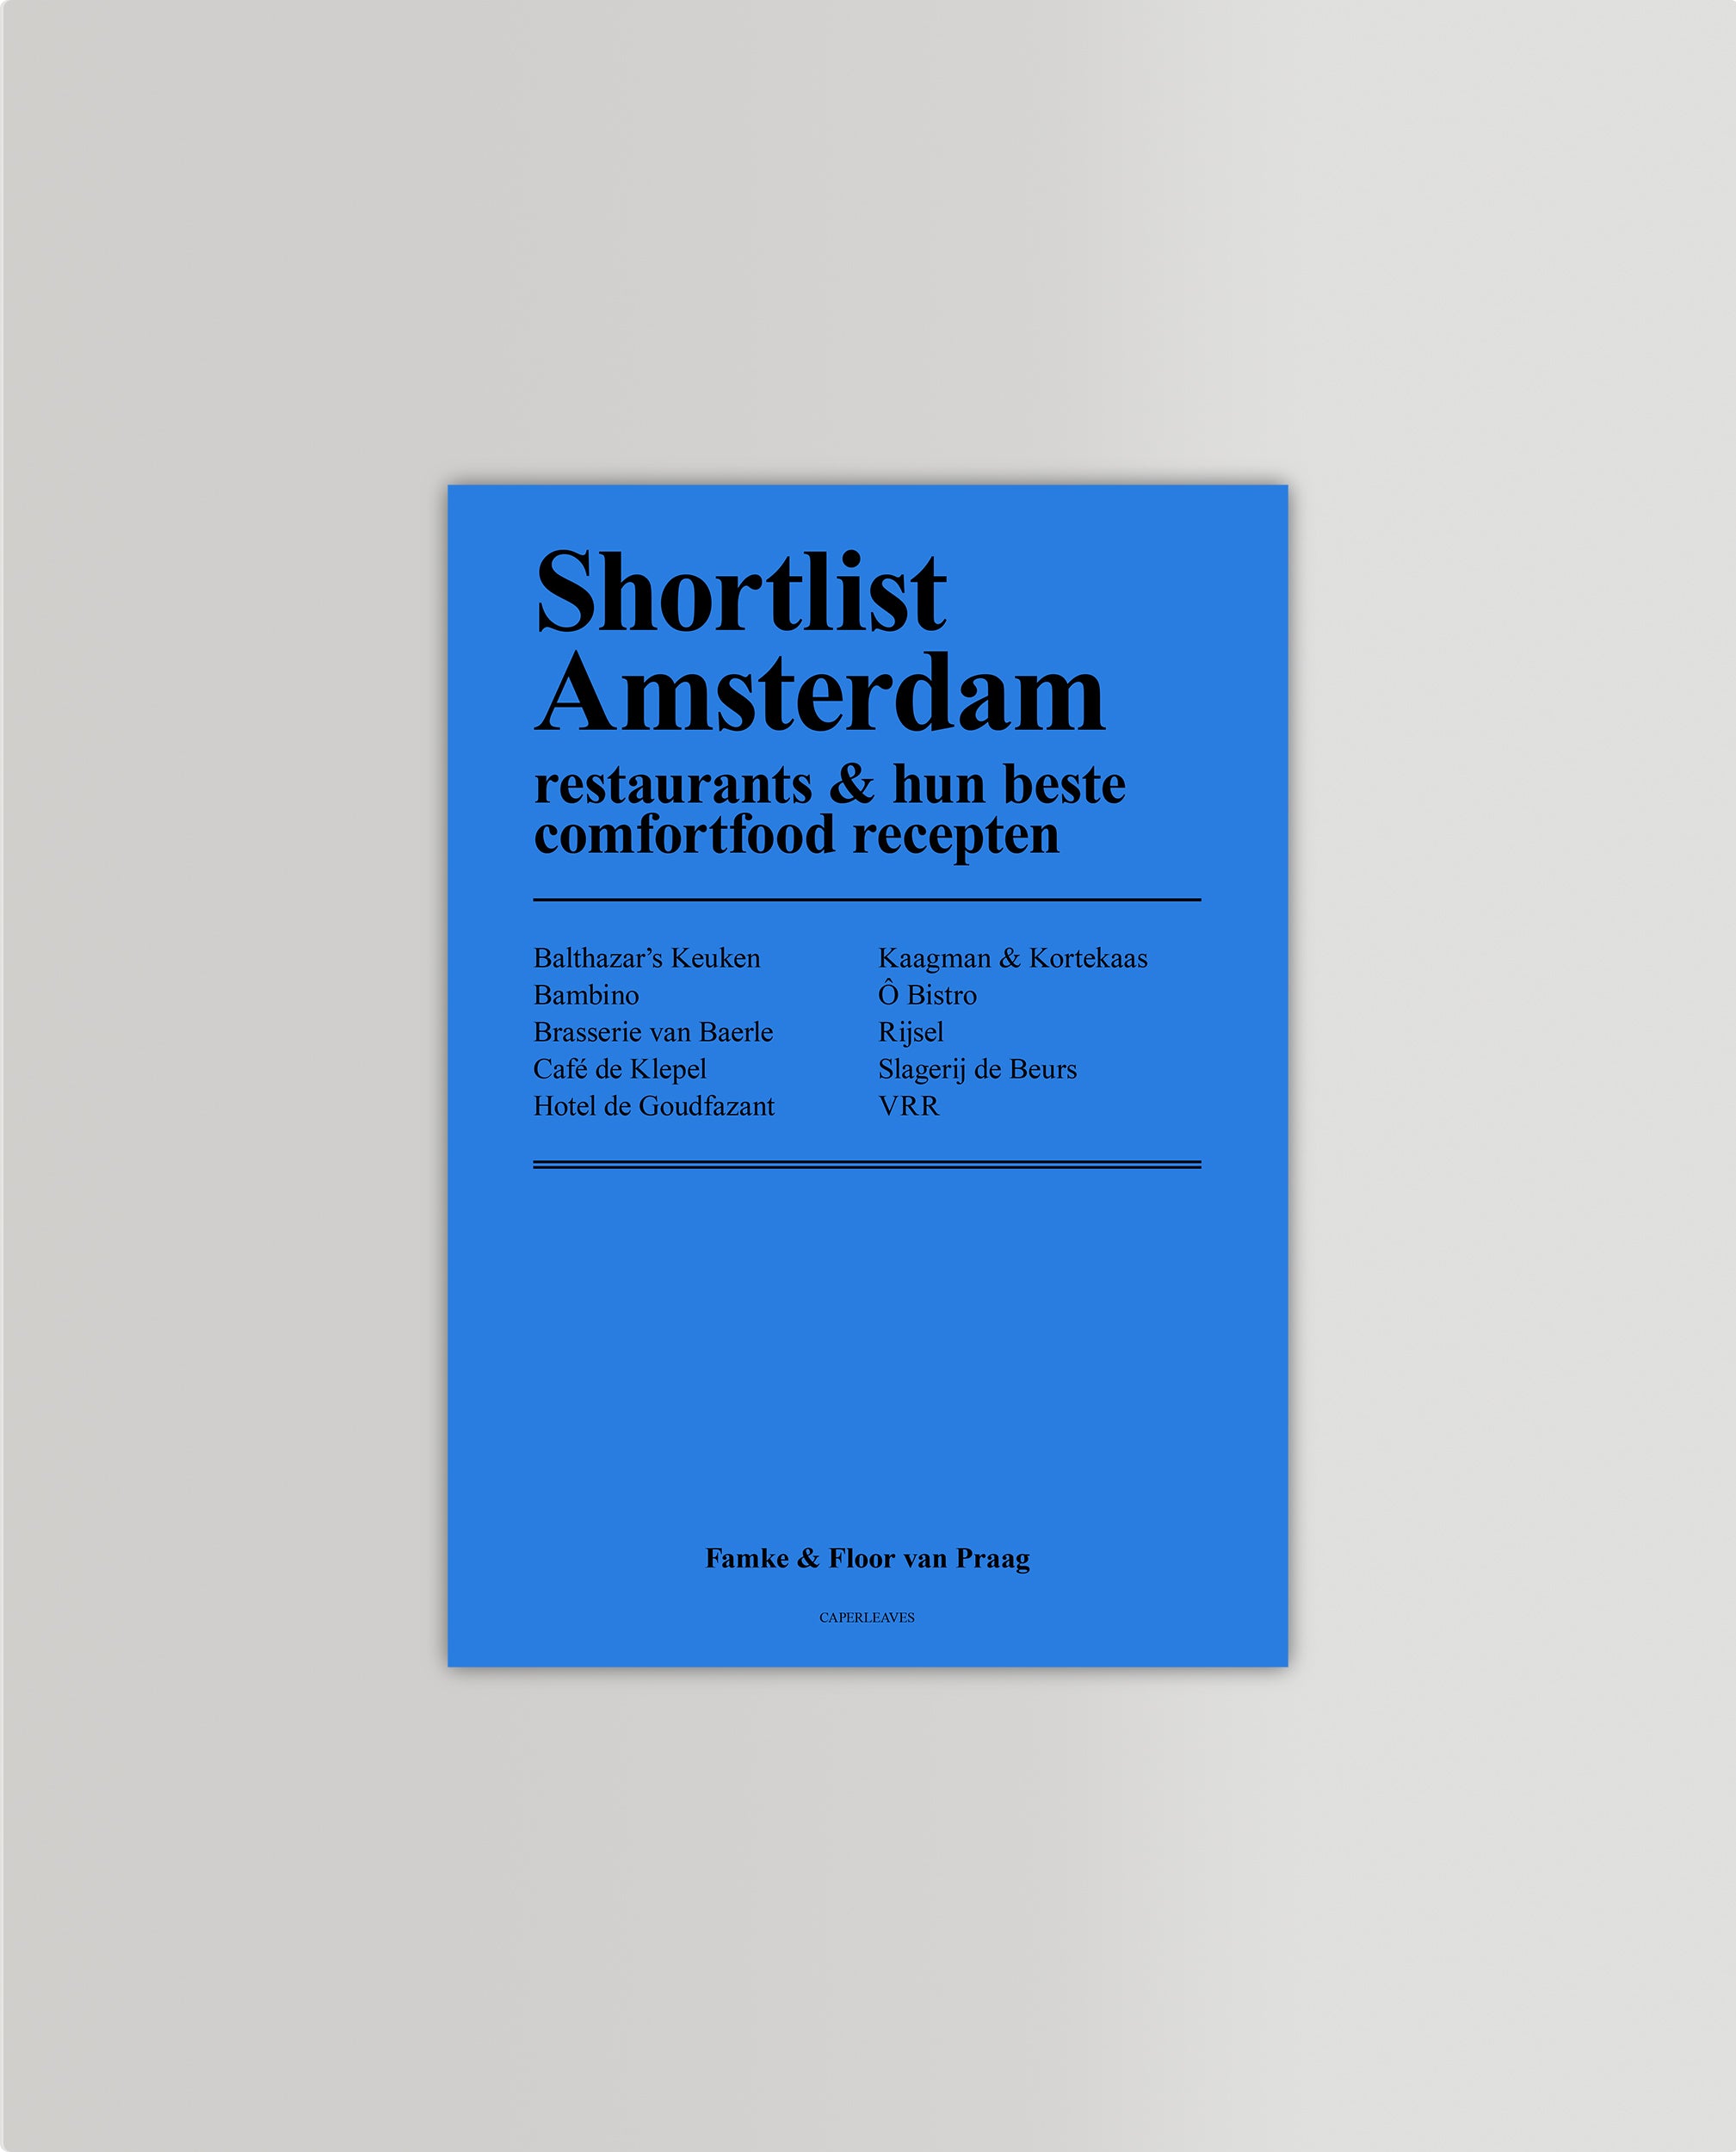 Shortlist Amsterdam: Comfortfood Recepten